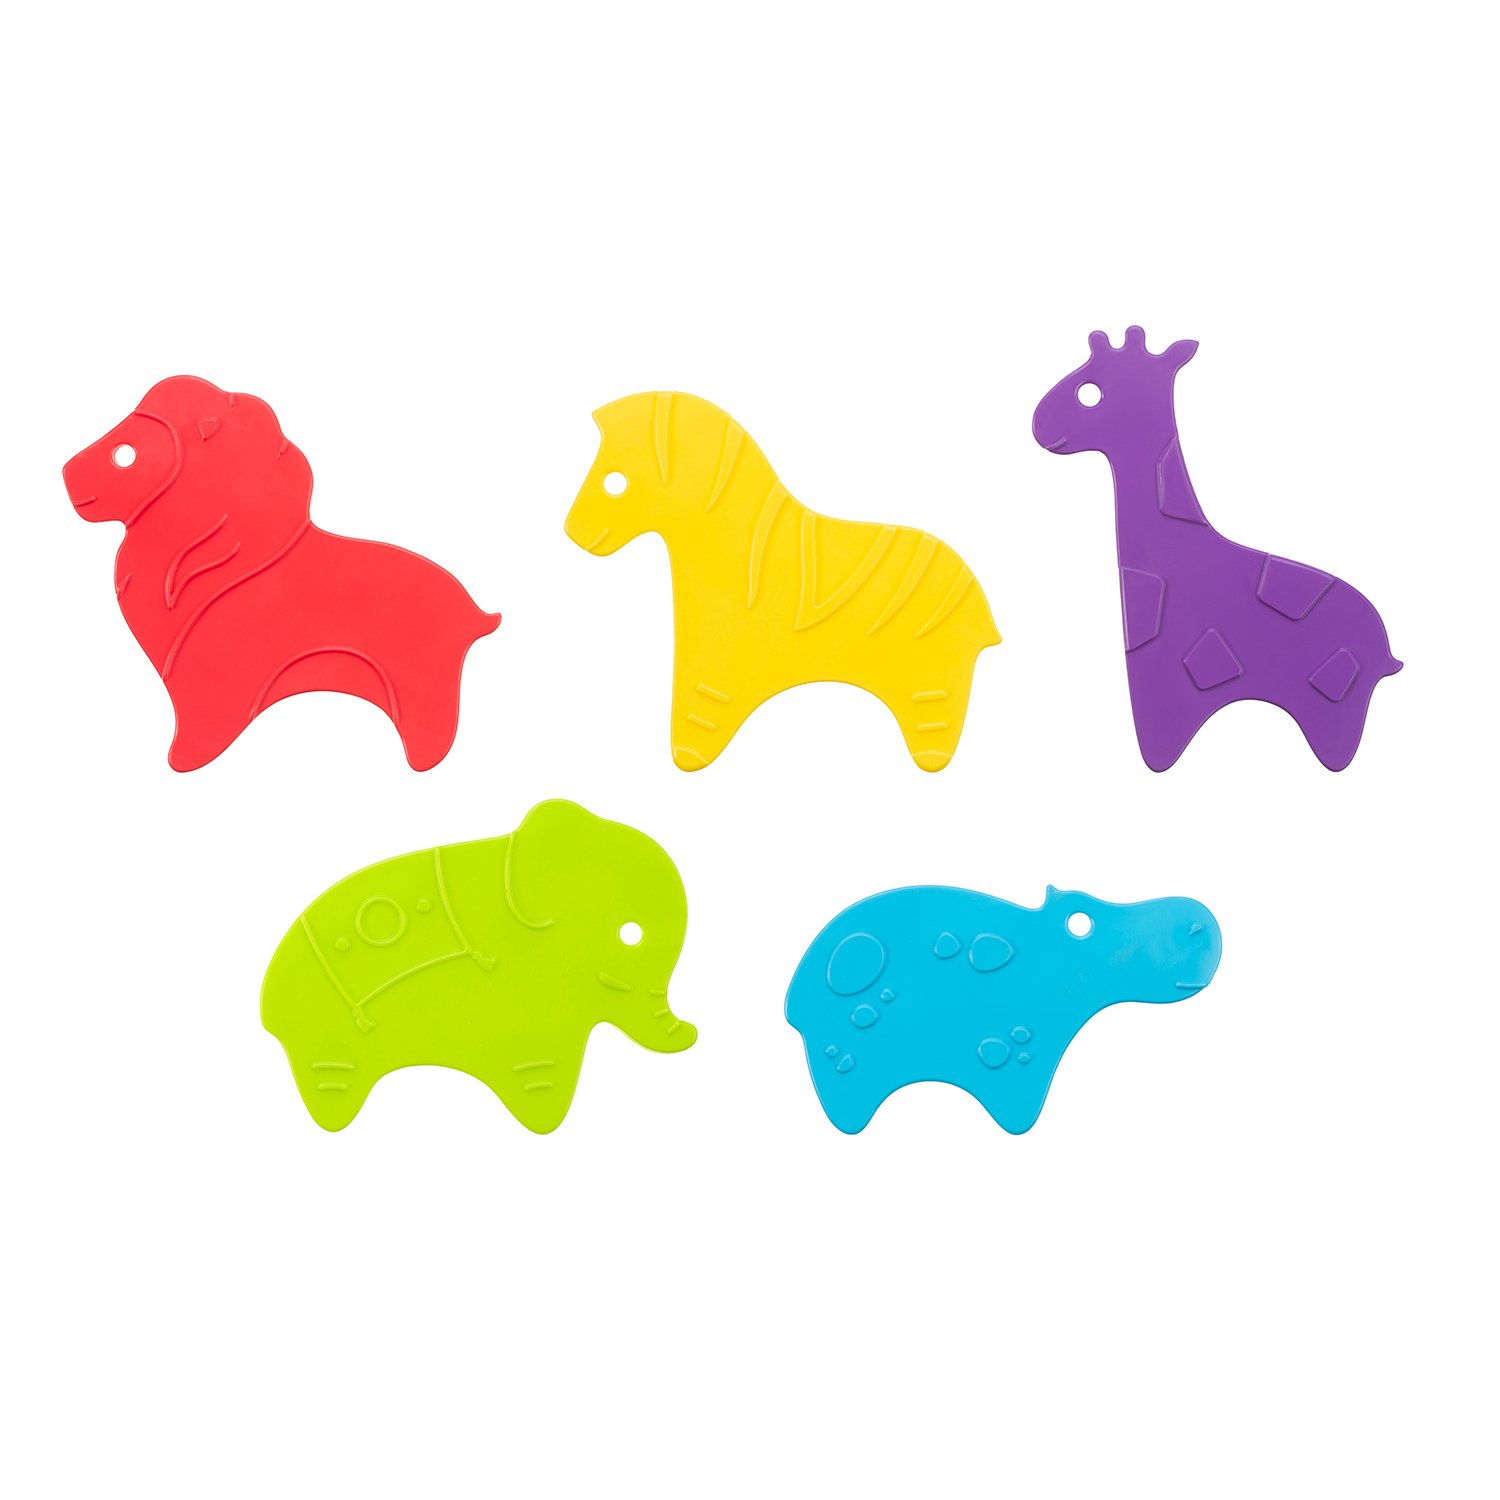 Мини-коврики детские ROXY-KIDS для ванной противоскользящие Safari 5 шт цвета в ассортименте - фото 1